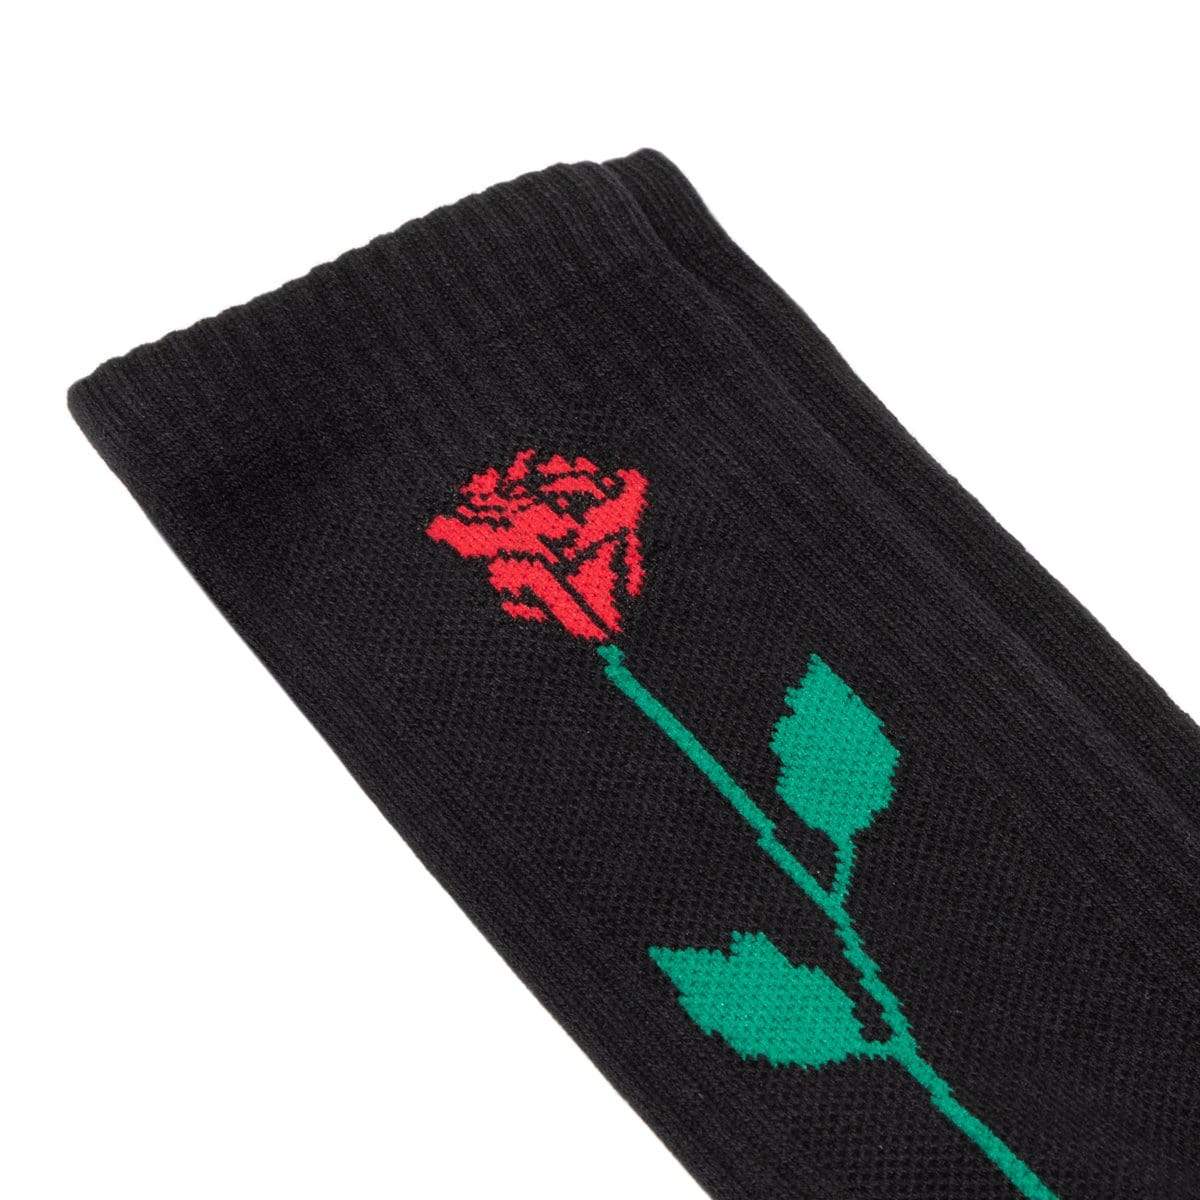 Bodega Socks BLACK / O/S BODEGA ROSE SOCK